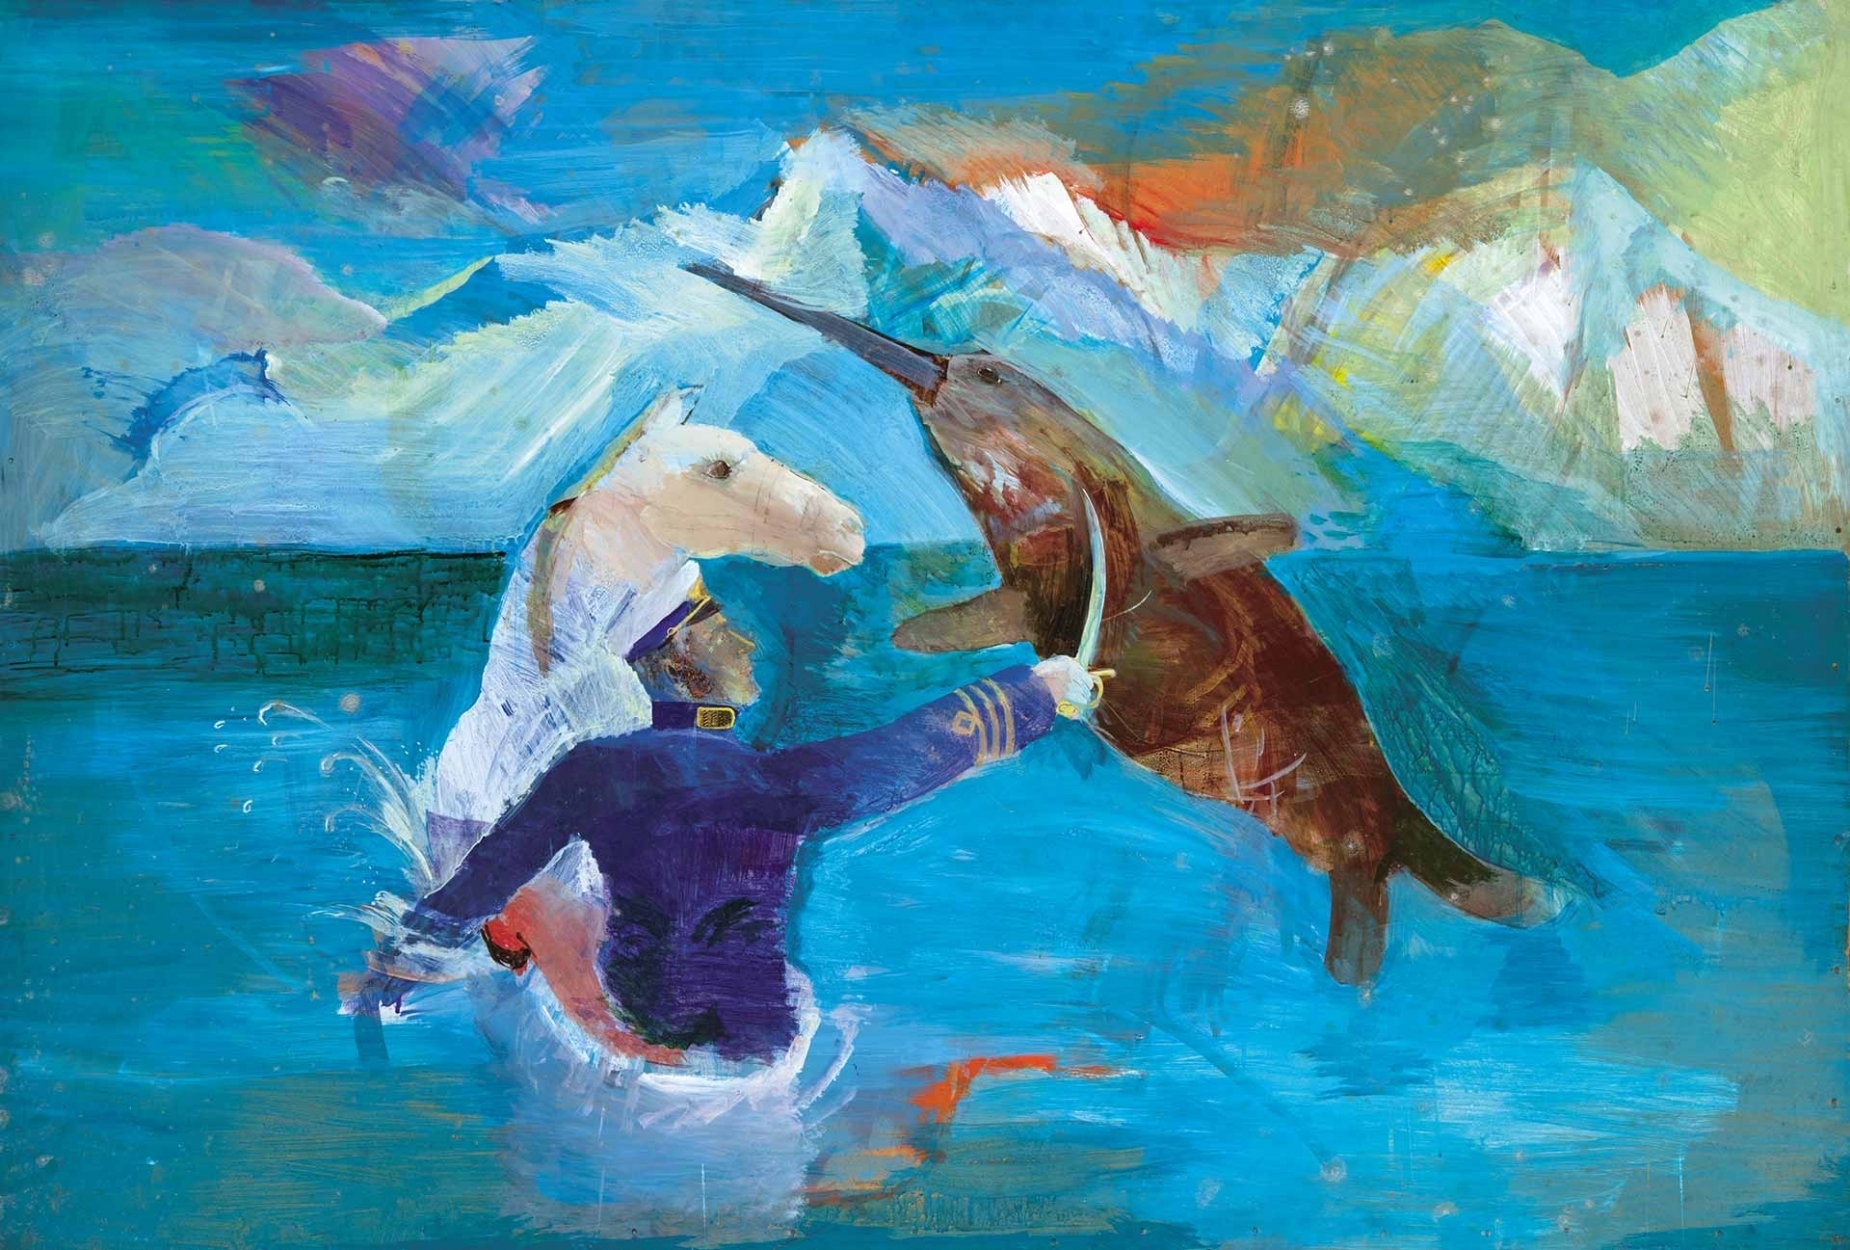 Roskó Gábor 1958- Swordfish Dolphin Fight, 1983